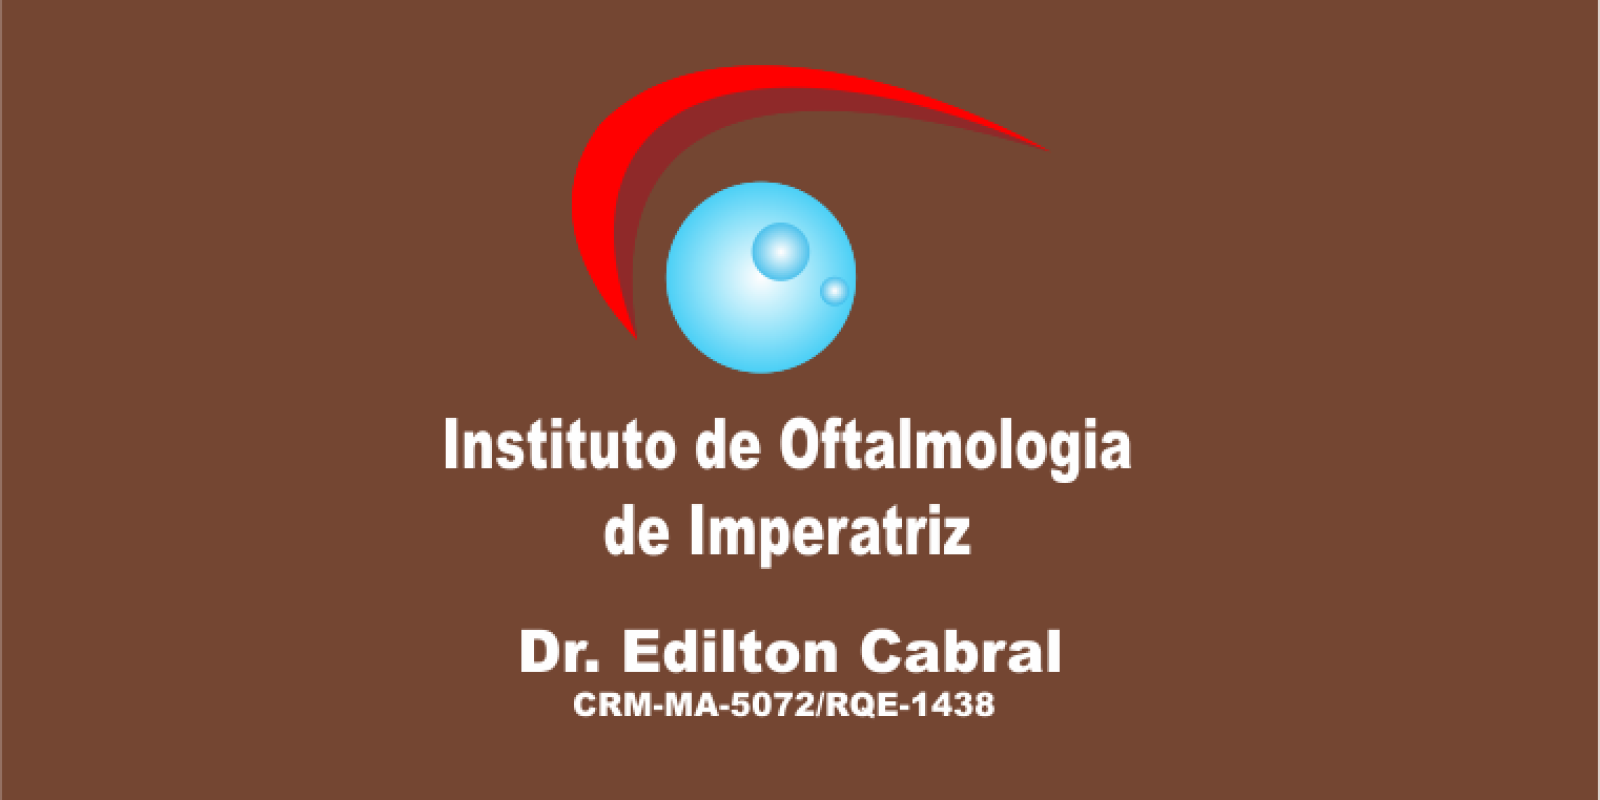 Instituto de Oftalmologia de Imperatriz - Dr. Edilton Cabral